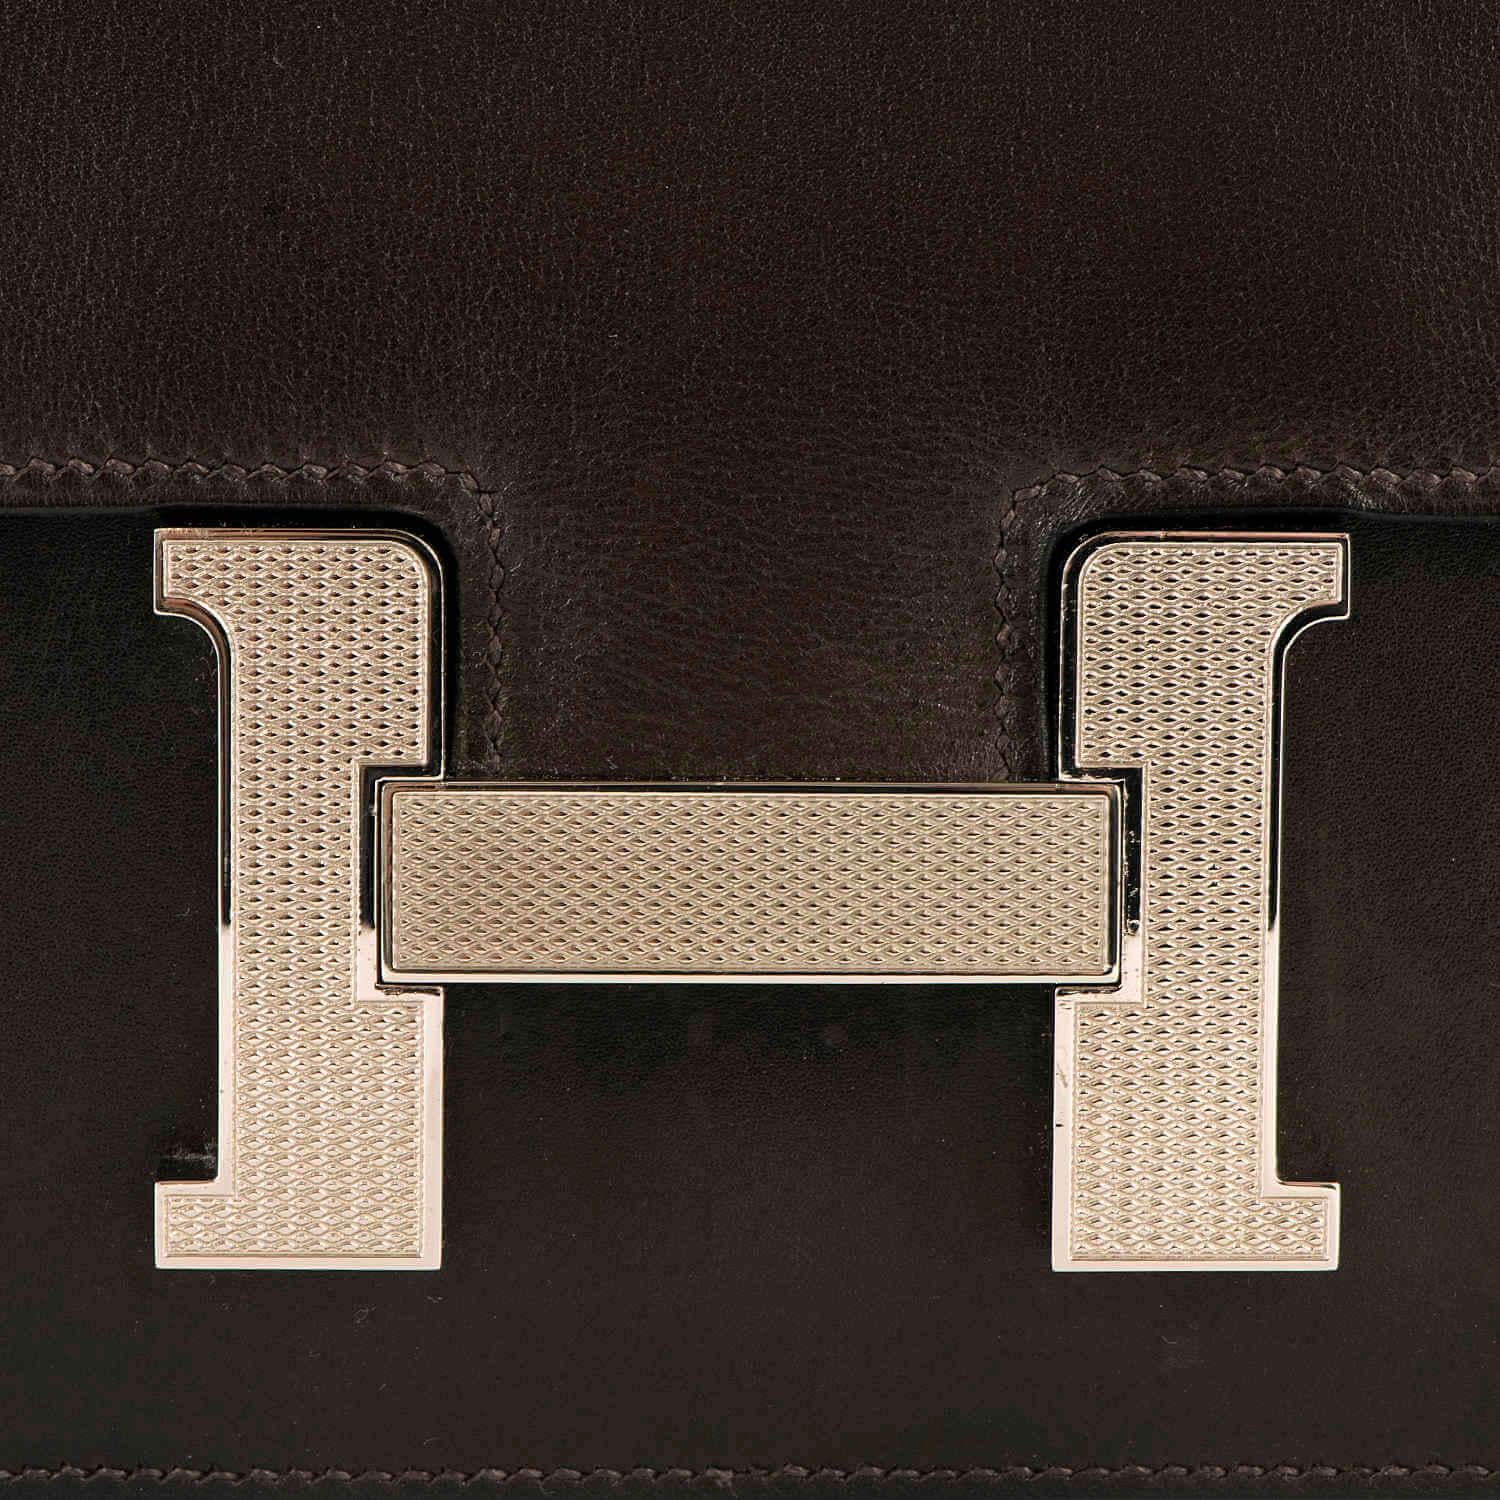 Black Tres Chic Limited Edition Hermes 23cm Ebene Box Leather Constance Shoulder Bag